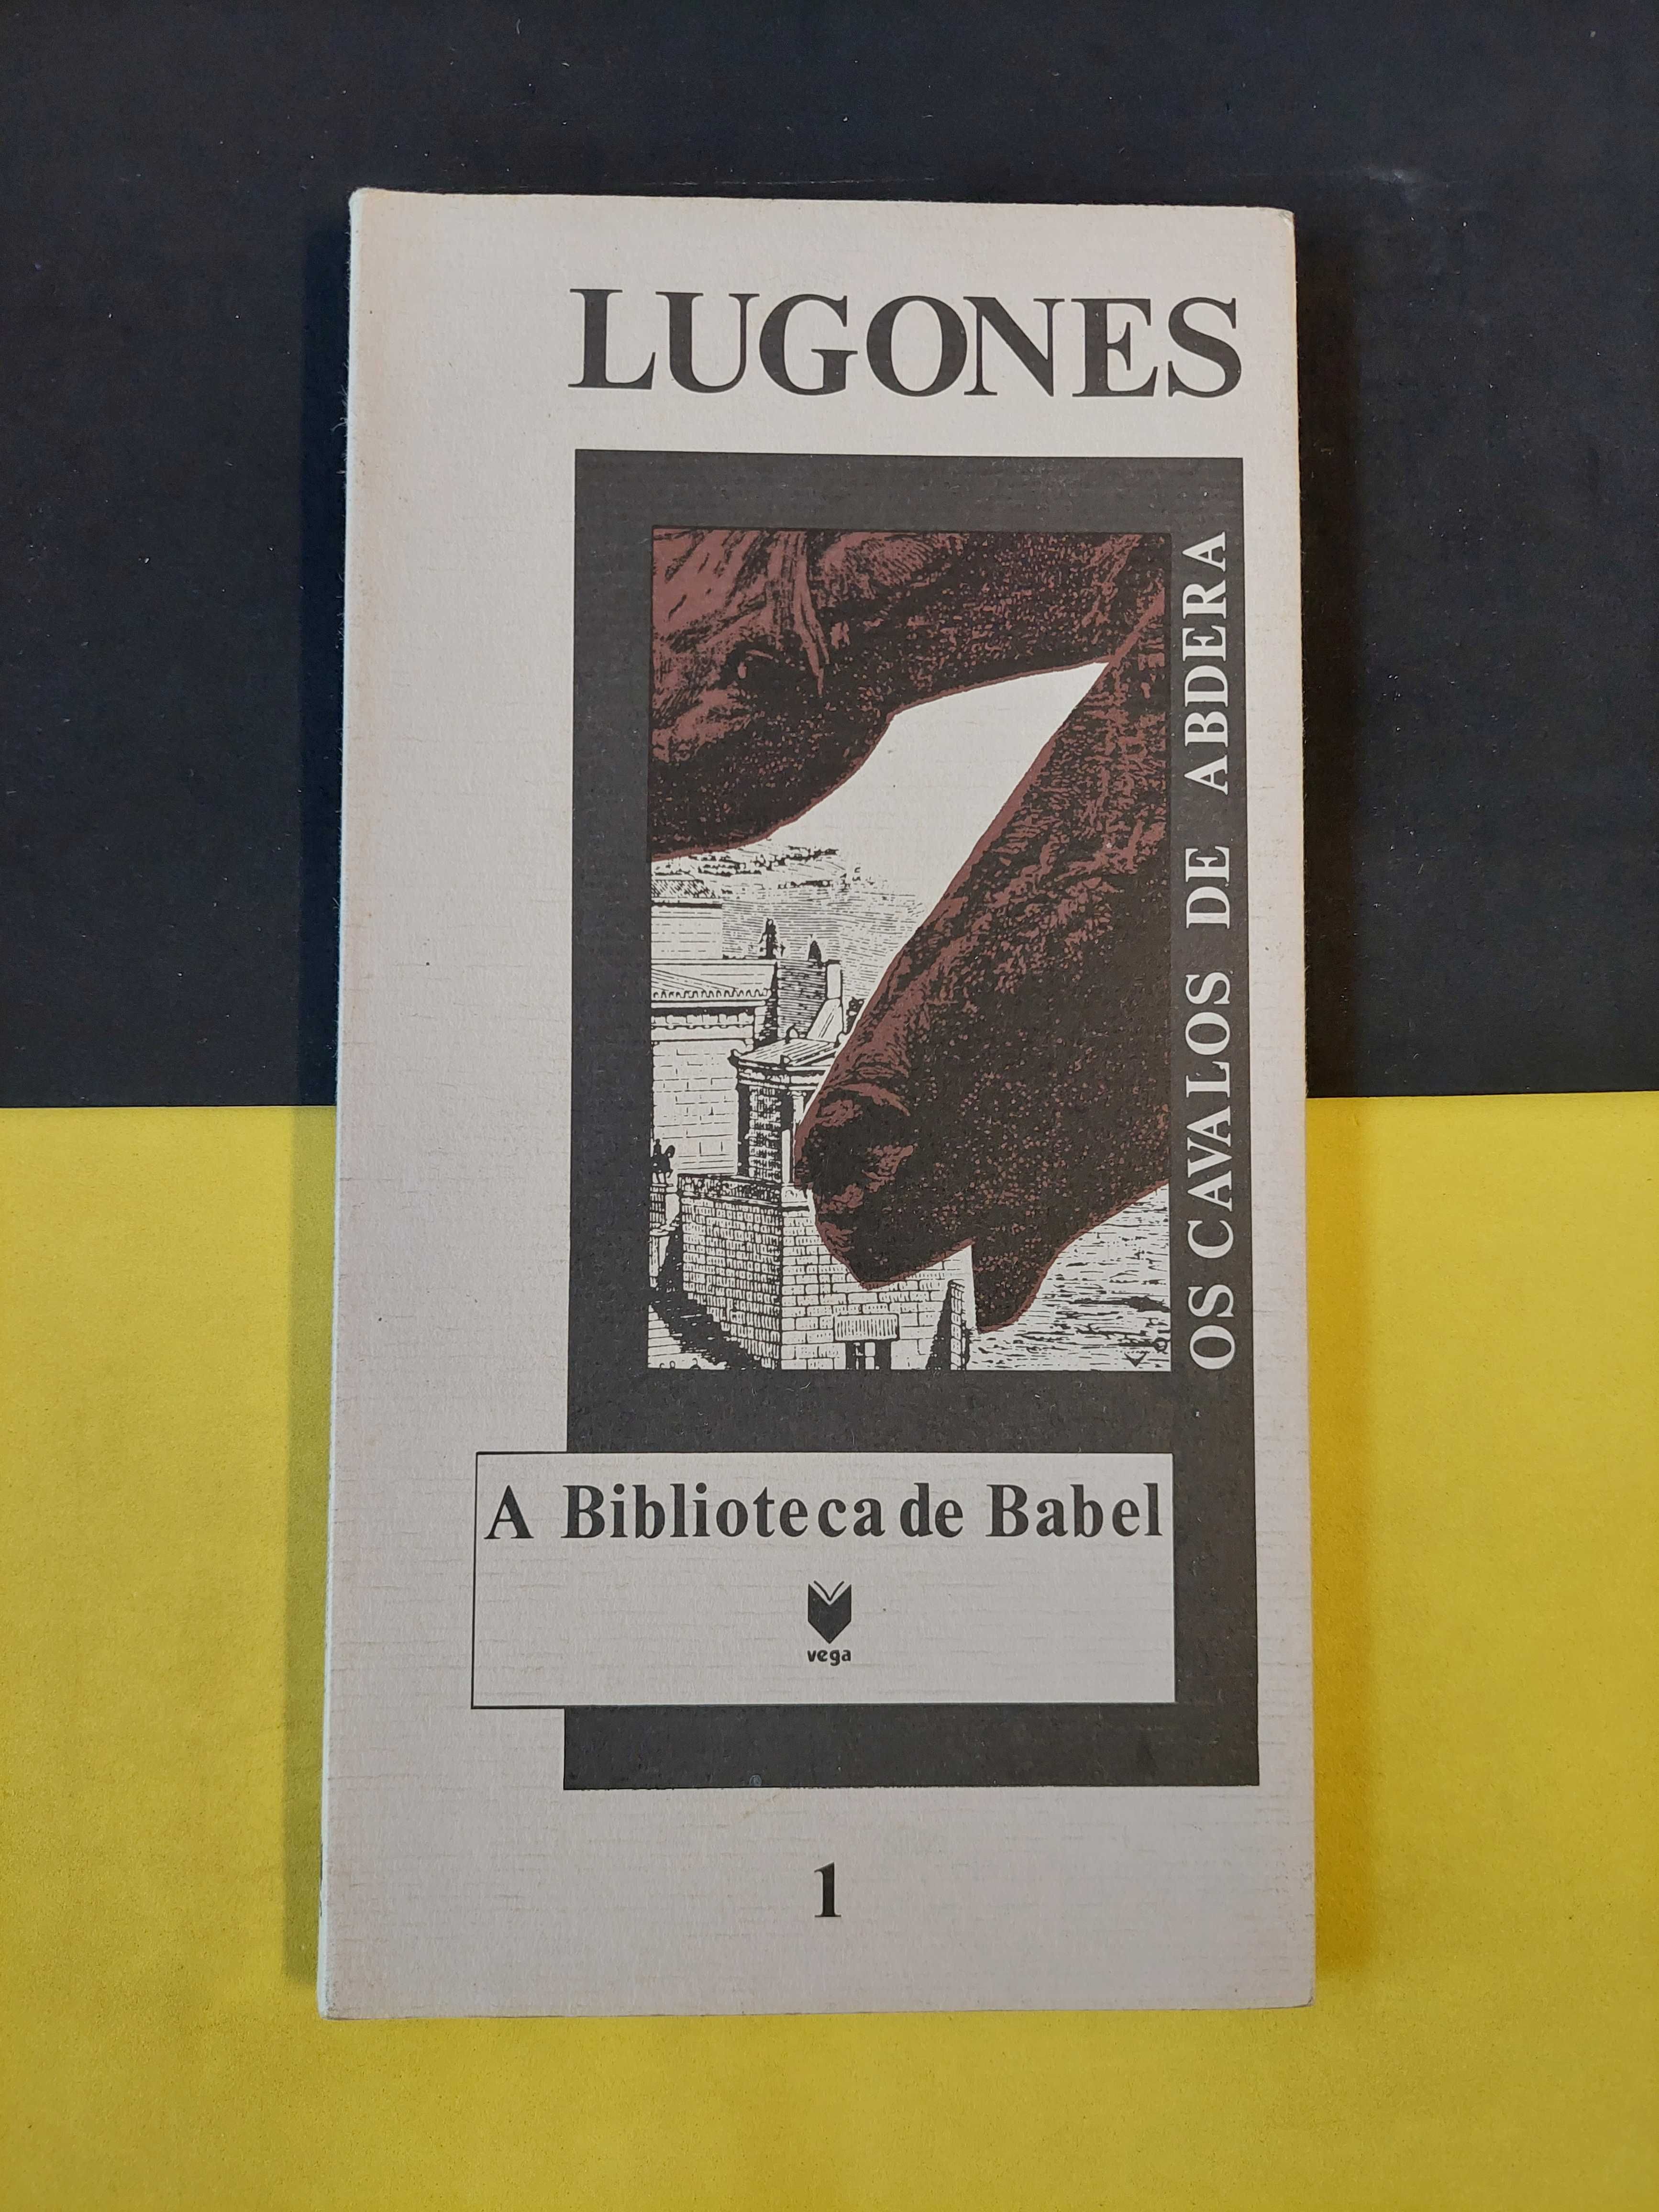 Lugones - Os cavalos de Abdera